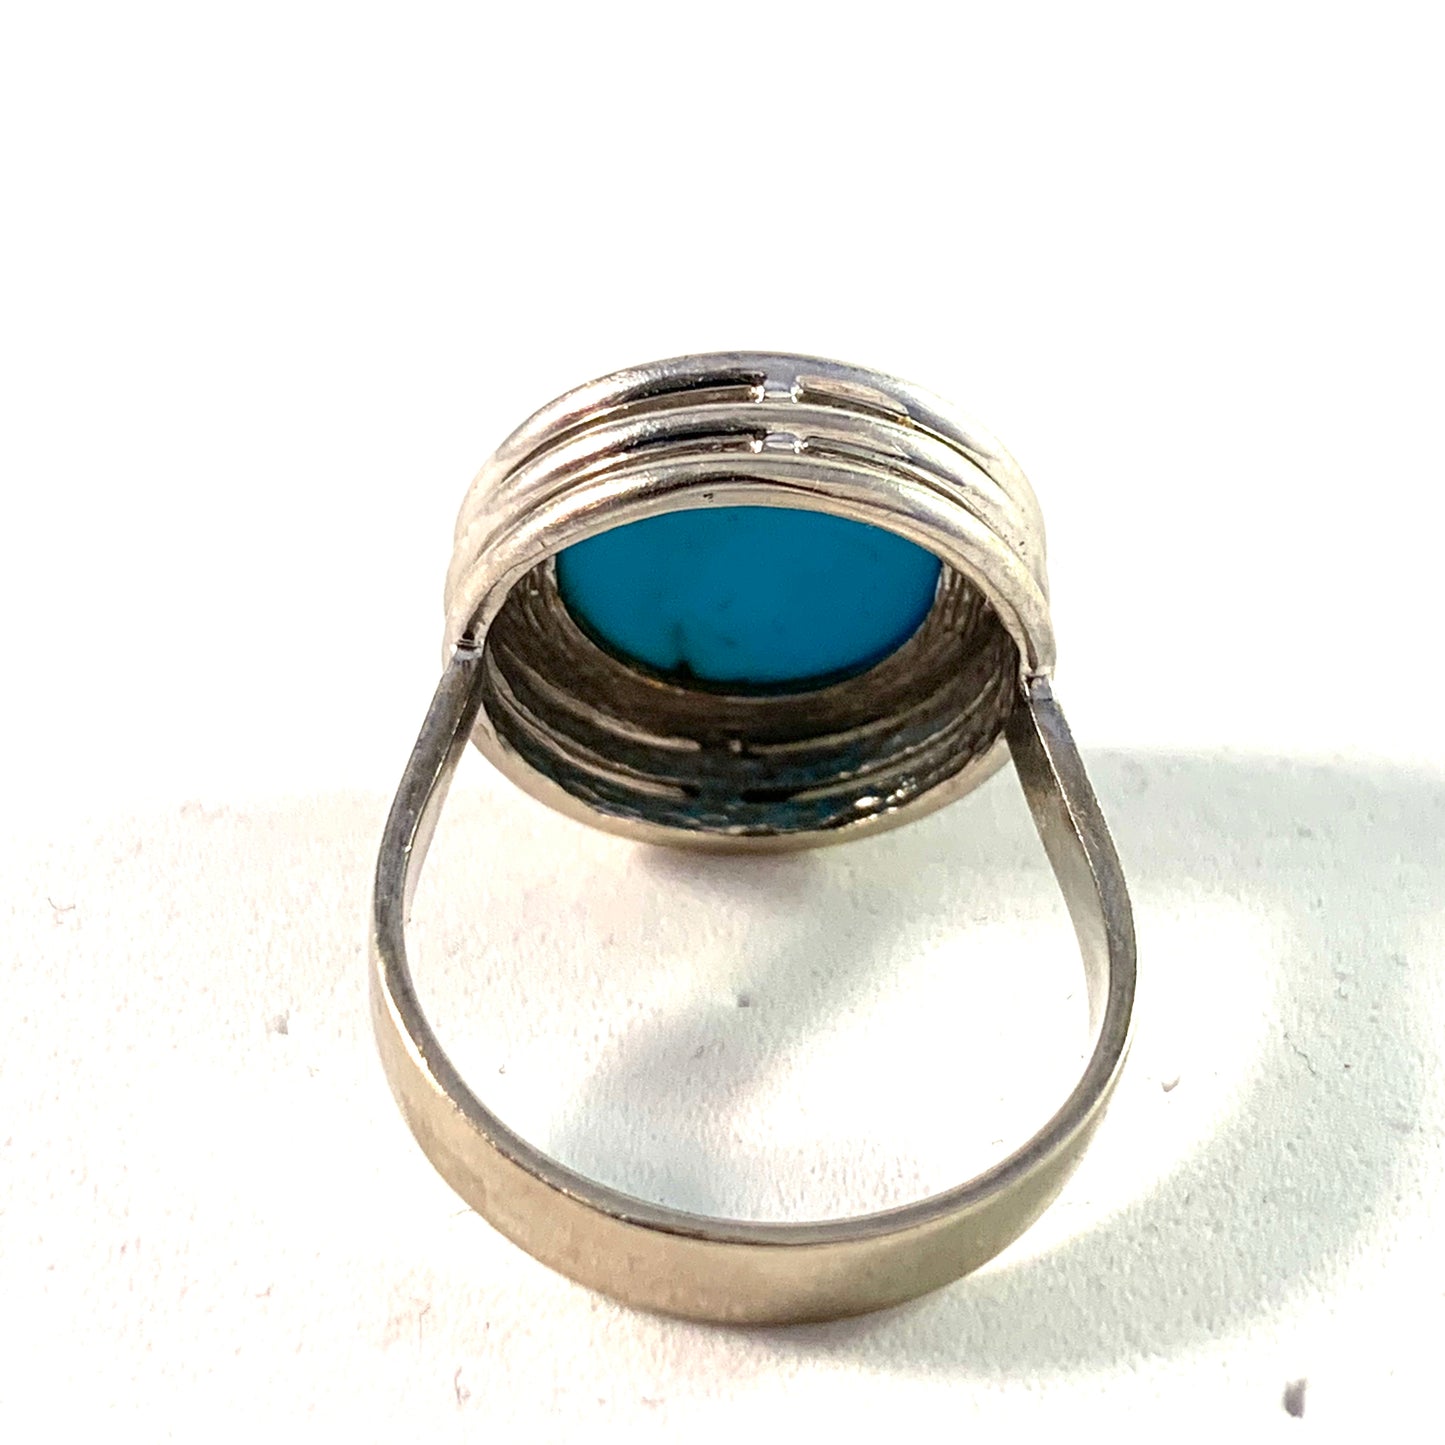 Vintage 1960s 14k White Gold Turquoise Ring. Maker's mark.